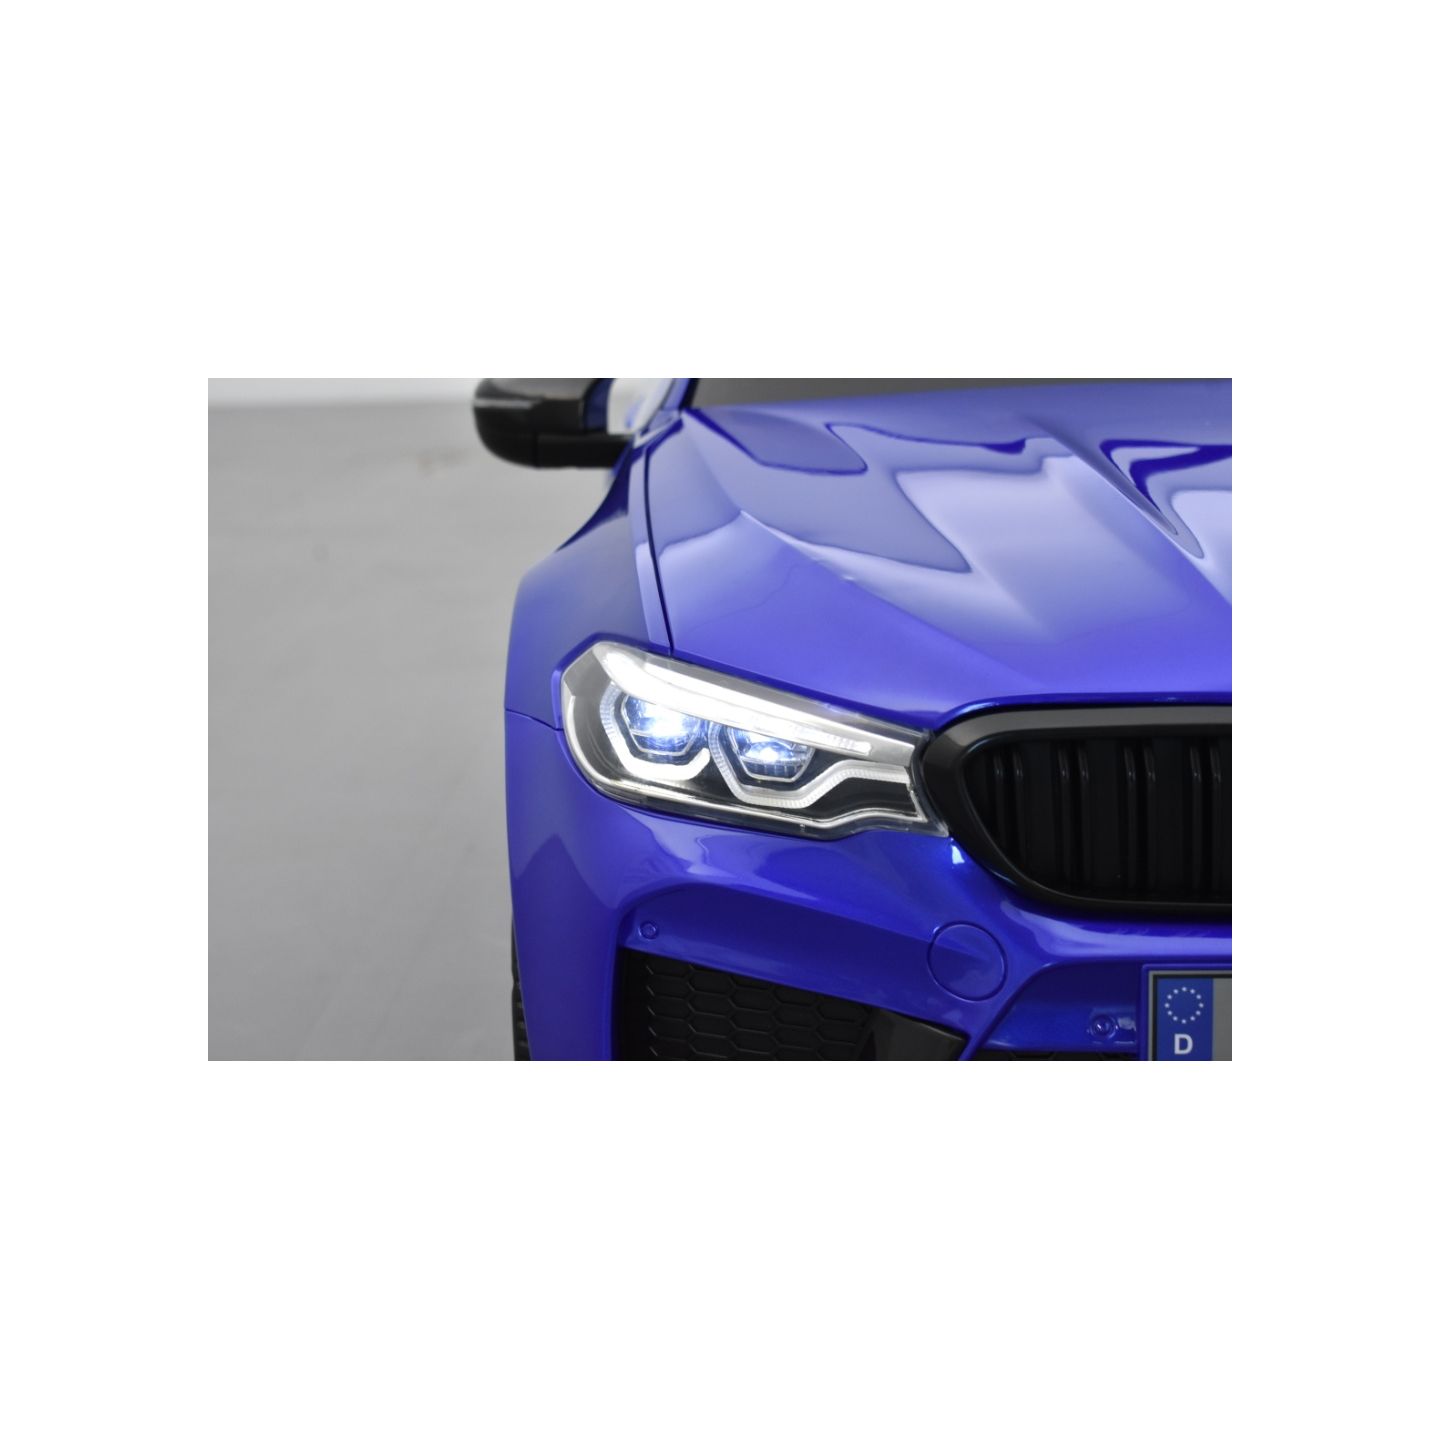 BMW M5 24 Volts bleu, voiture électrique enfant 24 Volts 1 place, 2 moteurs